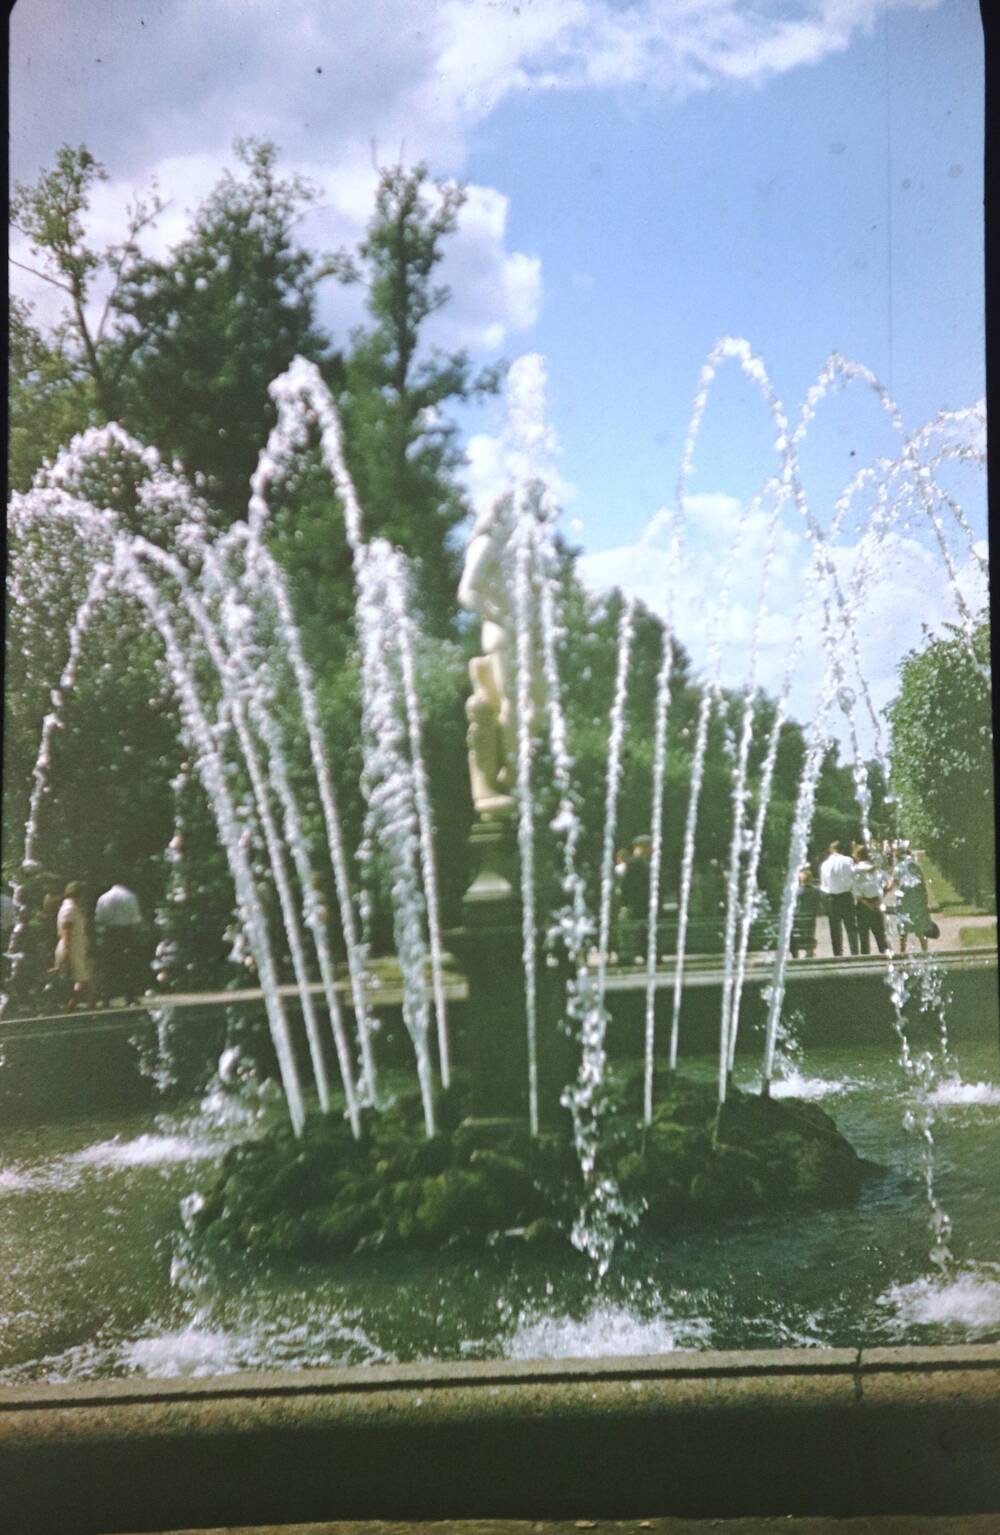 Слайд пластмассовый, на котором изображен фонтан в летнее время.